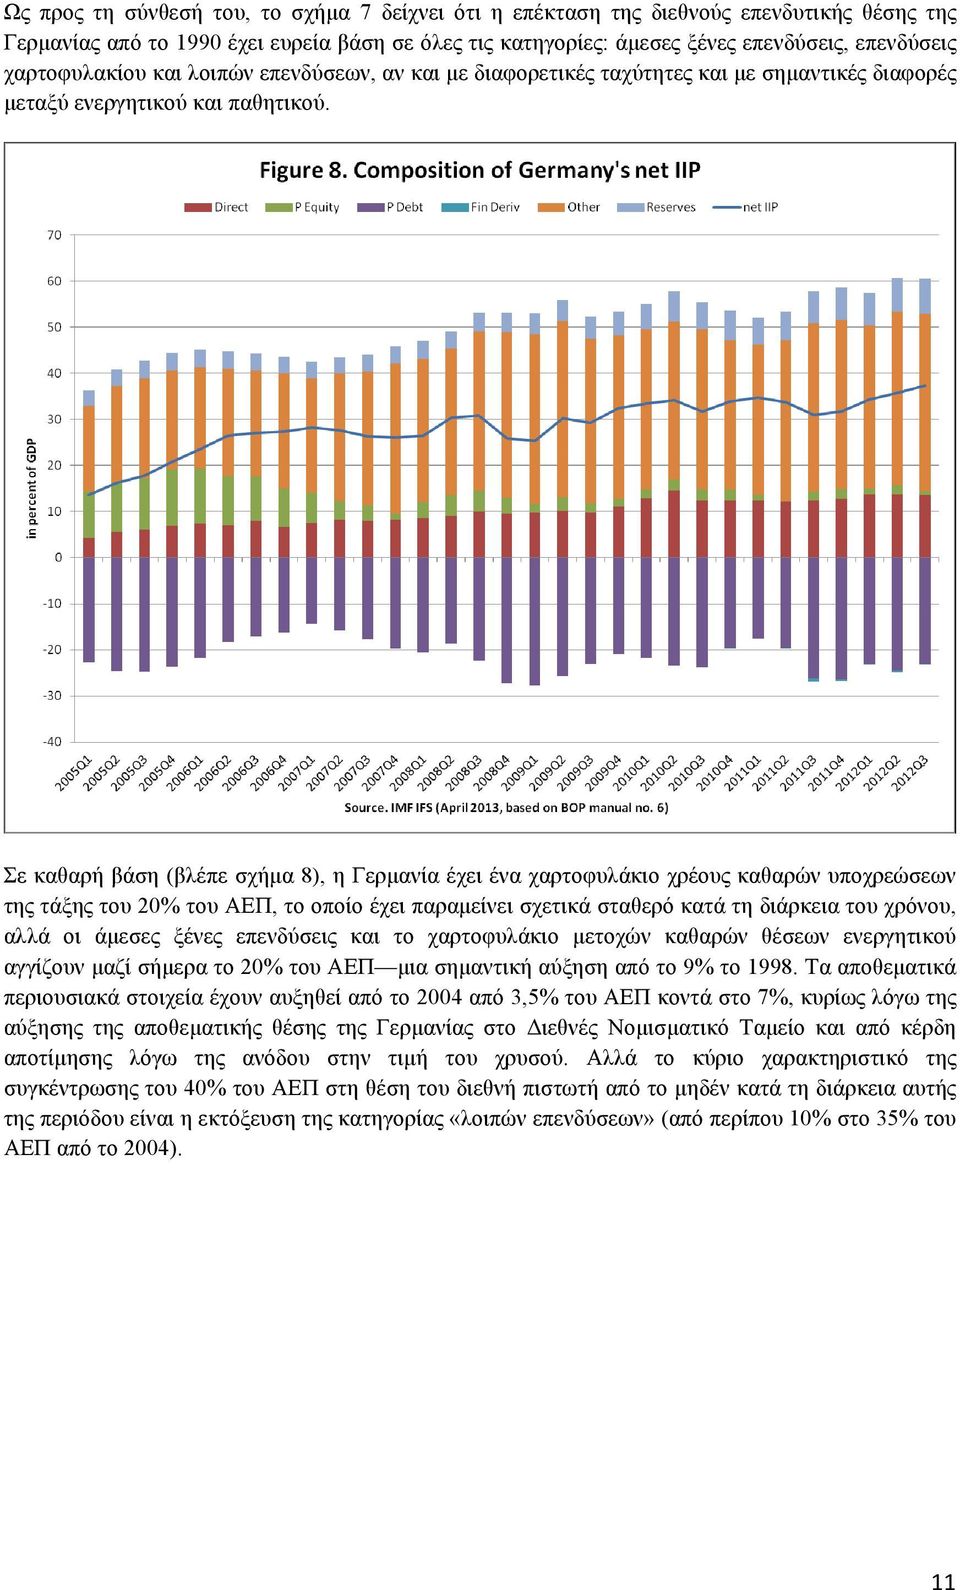 Σε καθαρή βάση (βλέπε σχήµα 8), η Γερµανία έχει ένα χαρτοφυλάκιο χρέους καθαρών υποχρεώσεων της τάξης του 20% του ΑΕΠ, το οποίο έχει παραµείνει σχετικά σταθερό κατά τη διάρκεια του χρόνου, αλλά οι